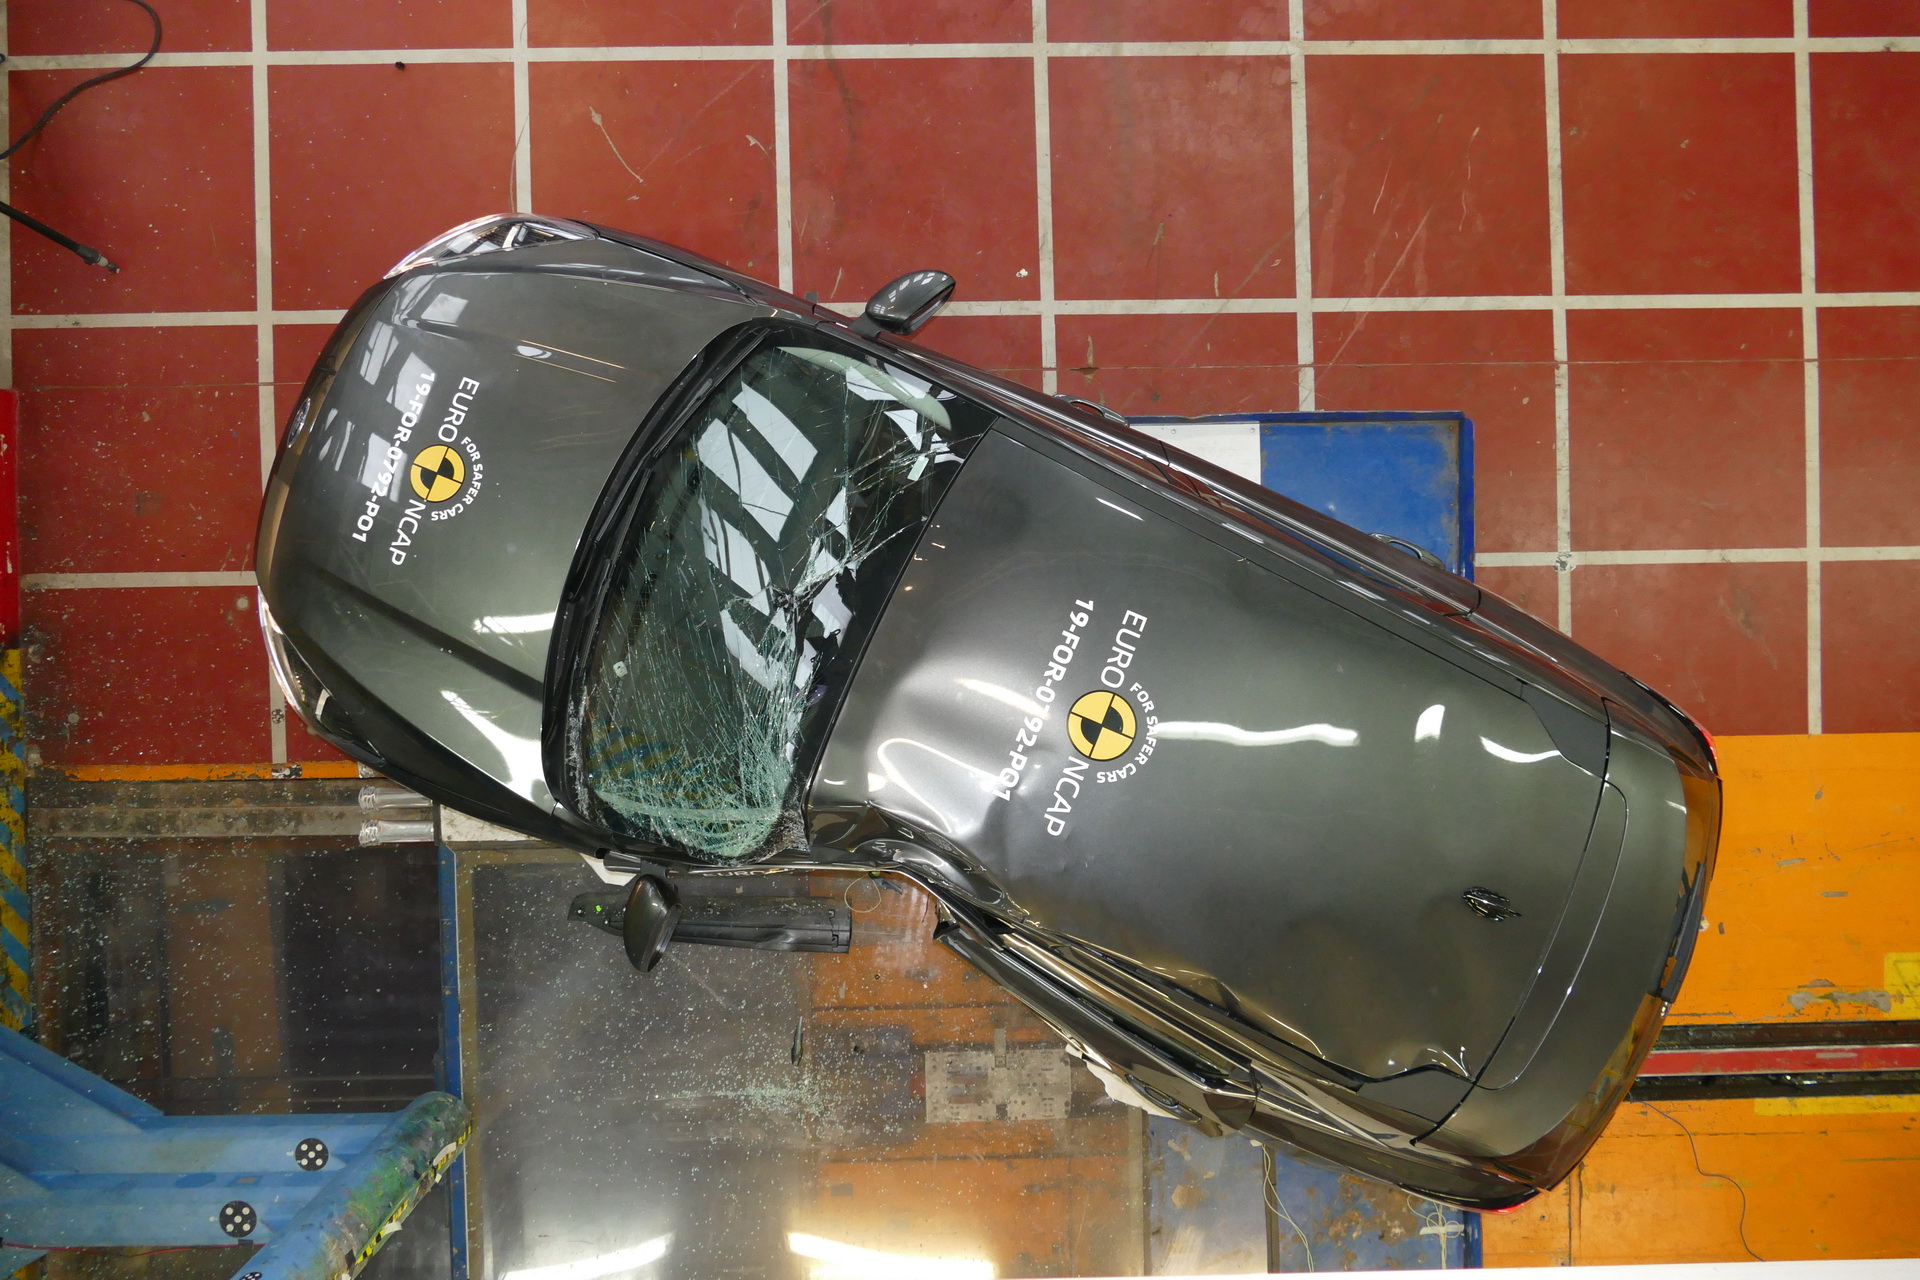 شاهد اختبار السلامة الأوروبية لـ 12 سيارة جديدة بينها تيسلا موديل X وبورش تايكان 8